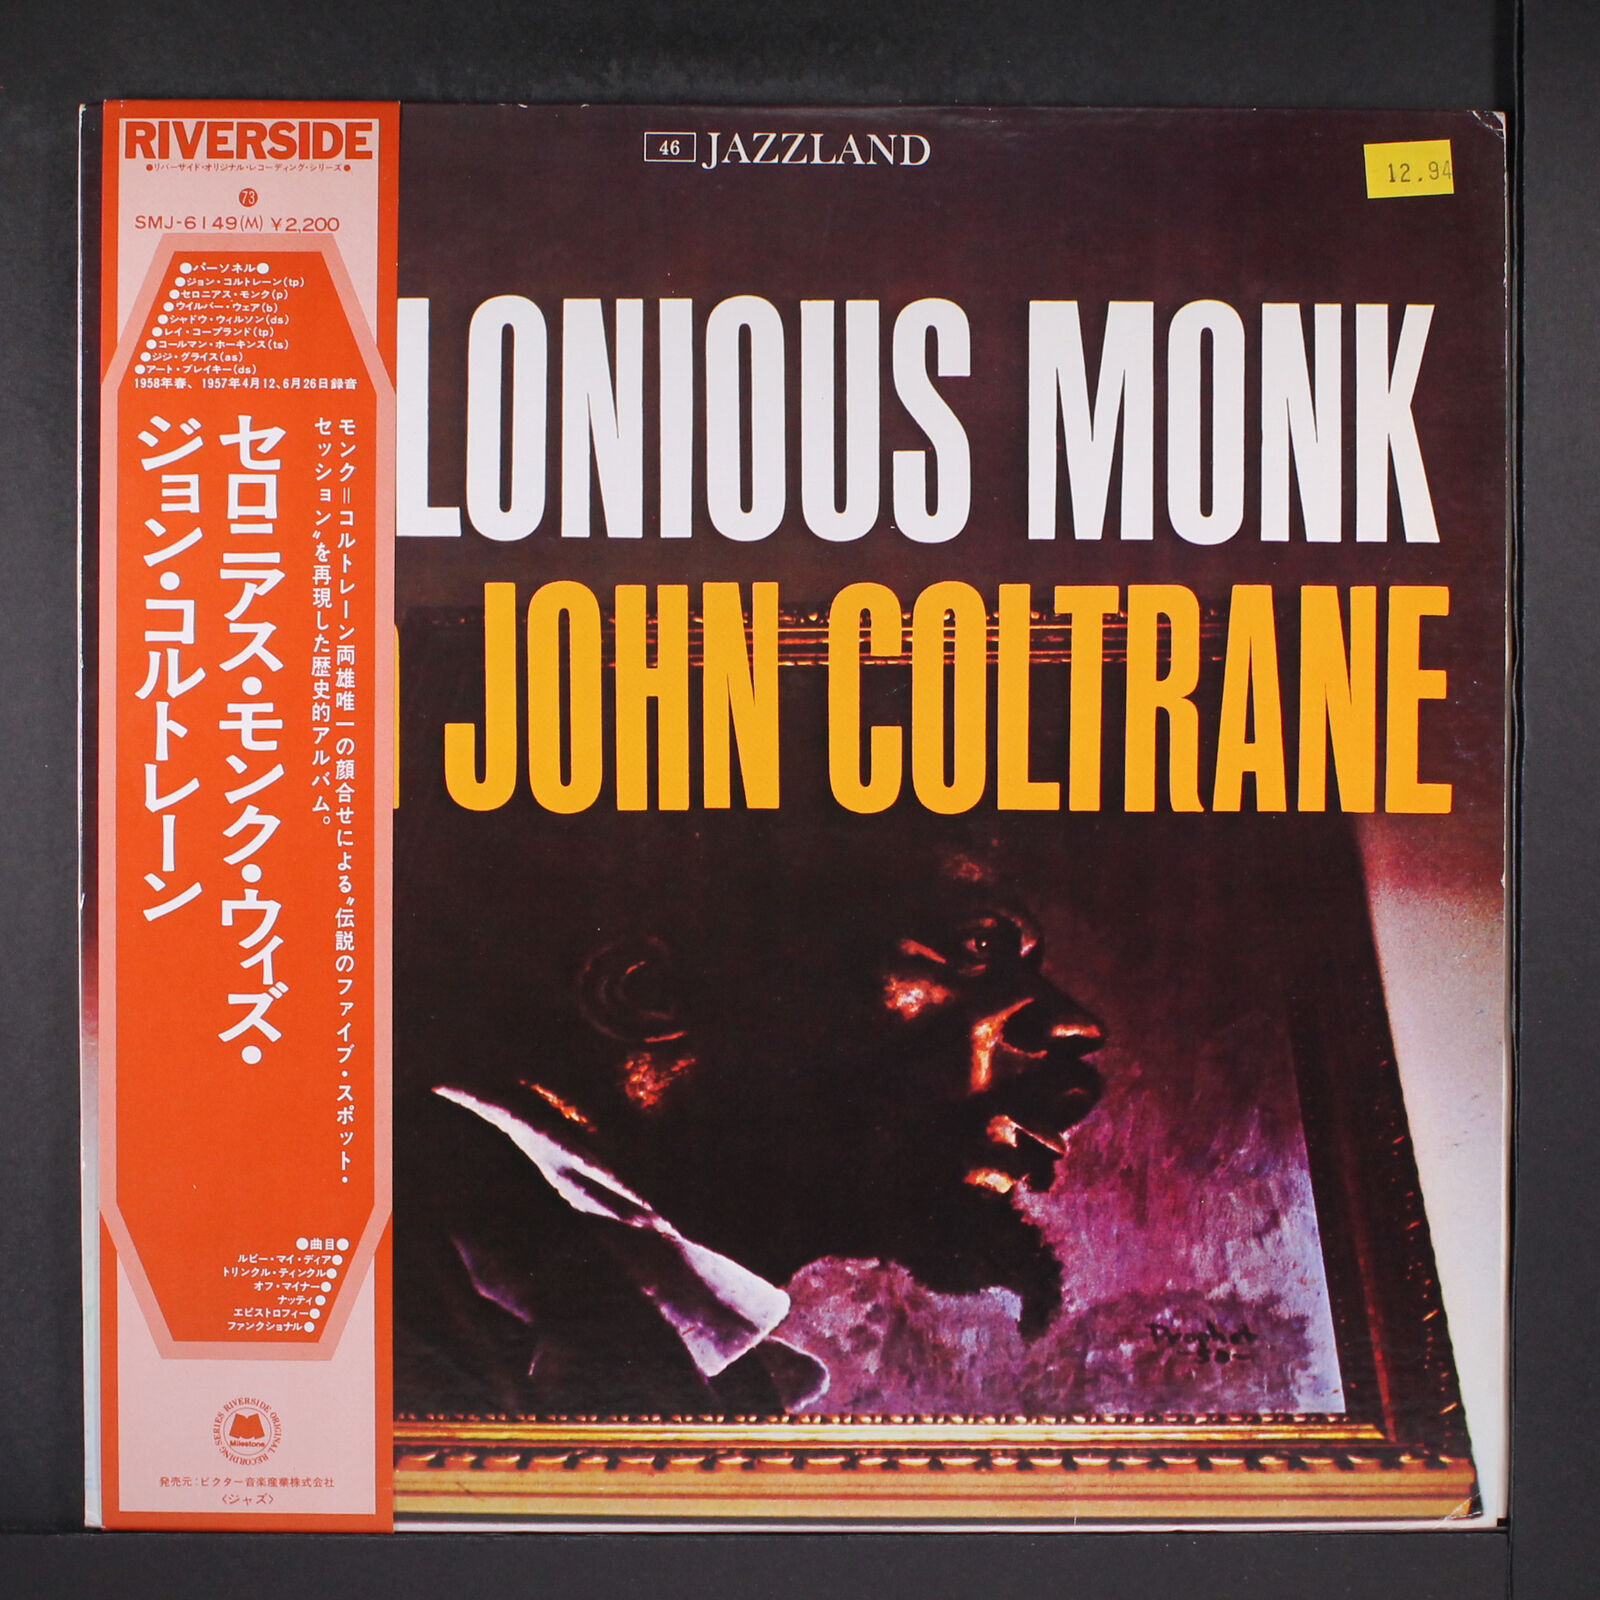 THELONIOUS MONK W/ JOHN COLTRANE: same RIVERSIDE 12" LP 33 RPM